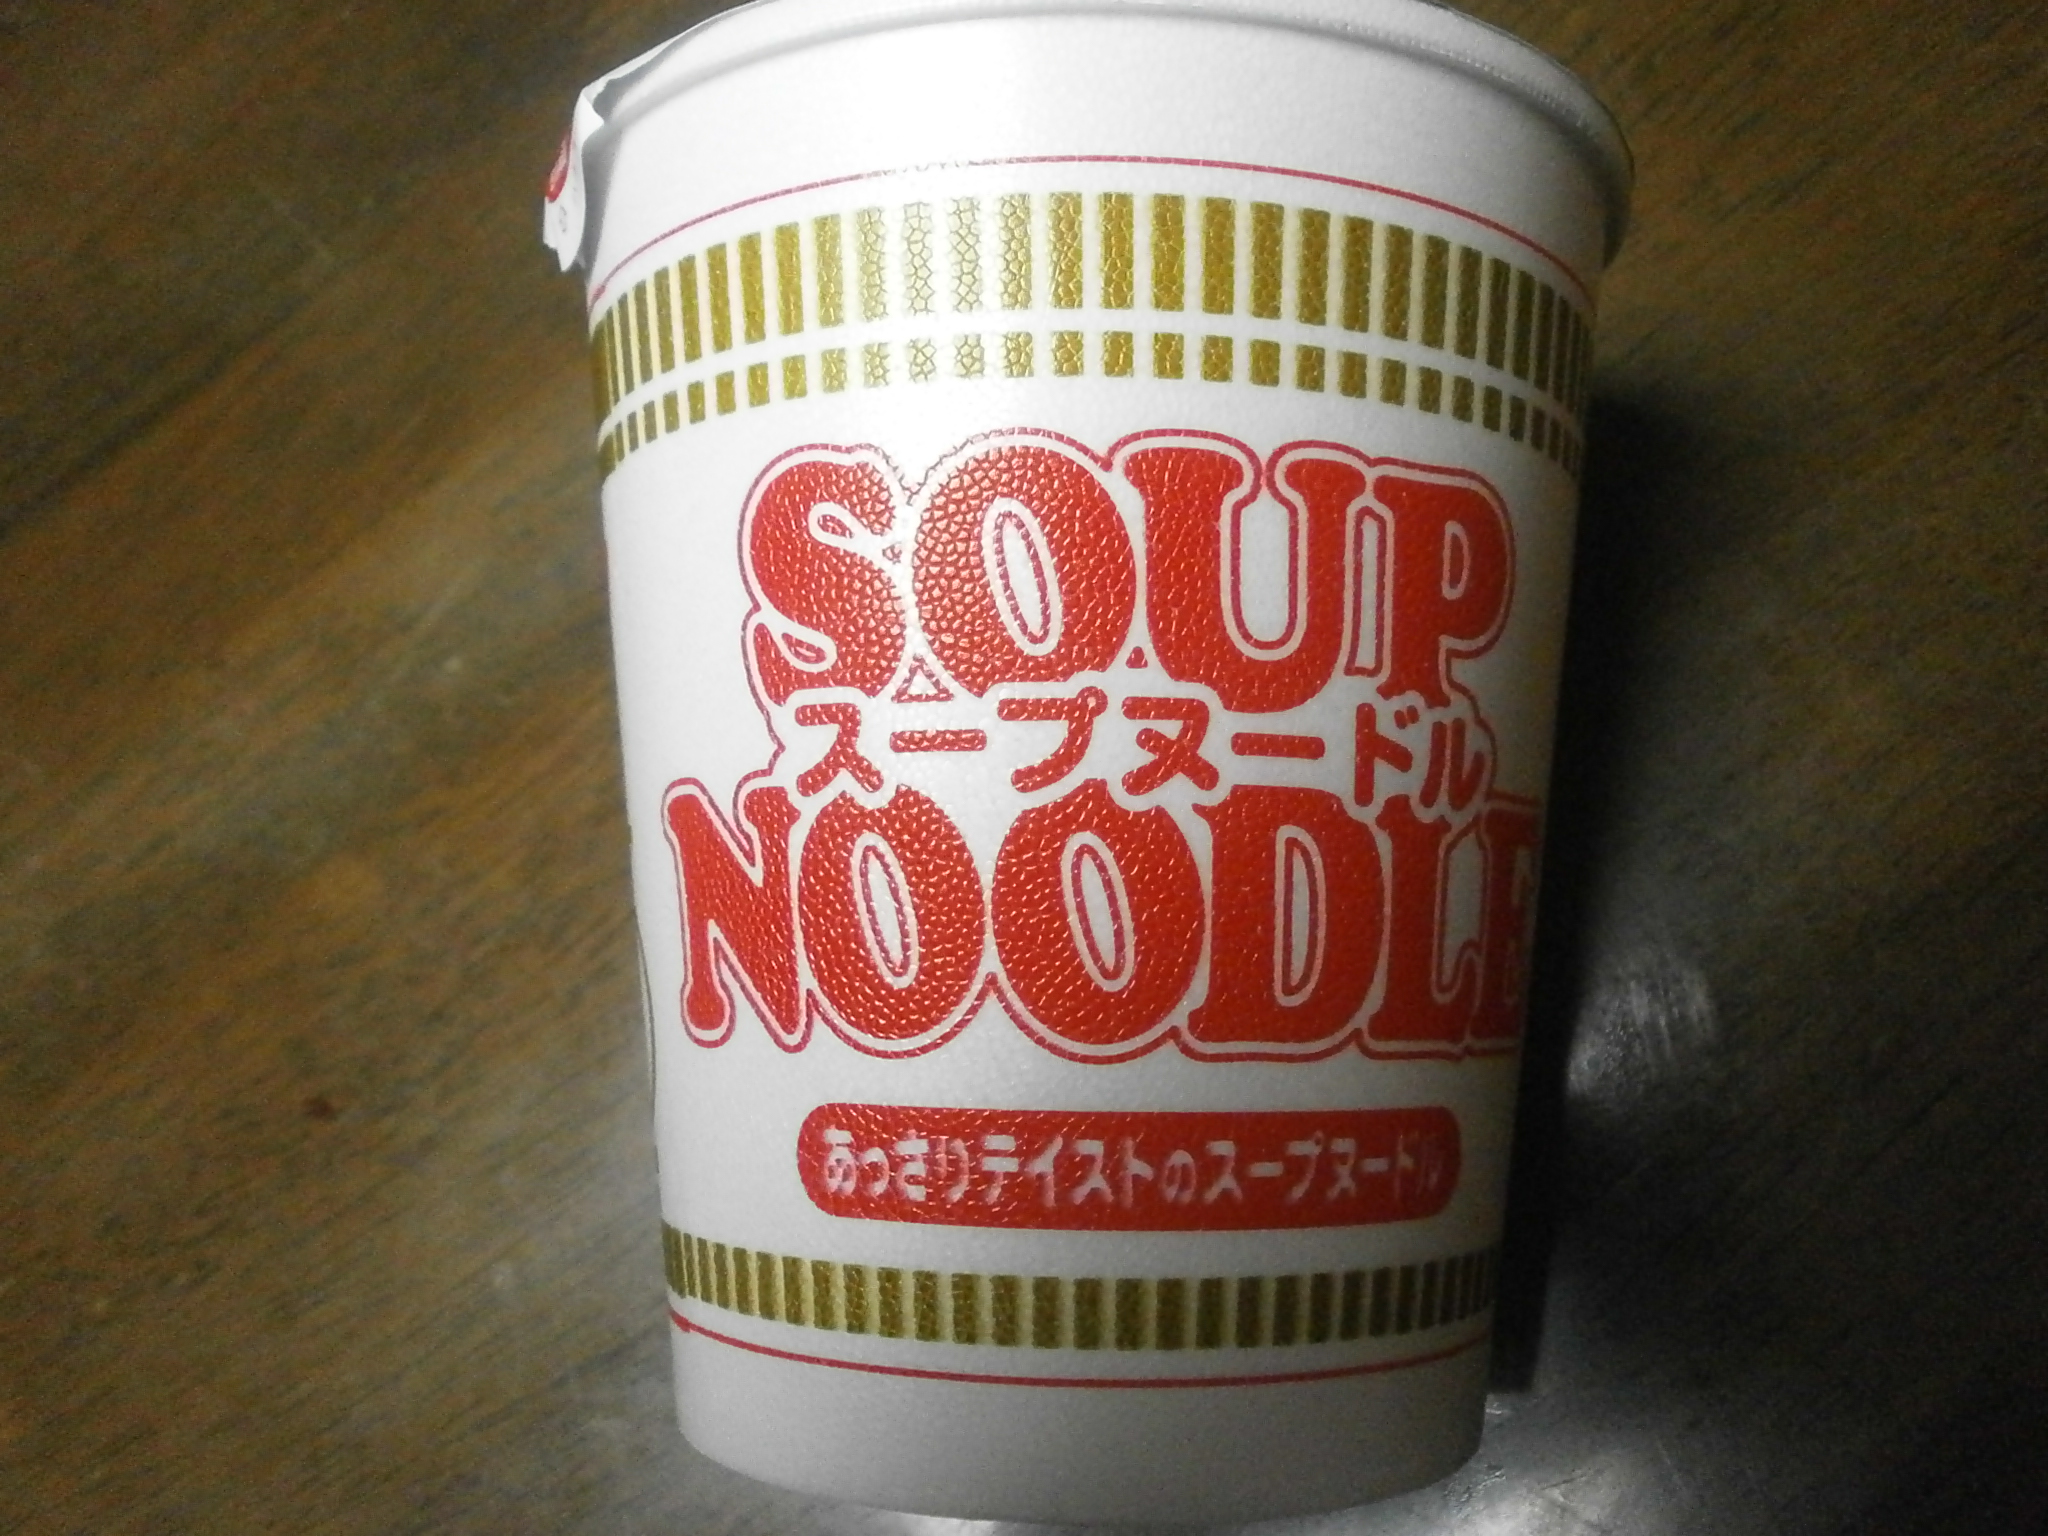 Che ad alto contenuto calorico? Noodle soup? Noodle soup (frutti di mare)?